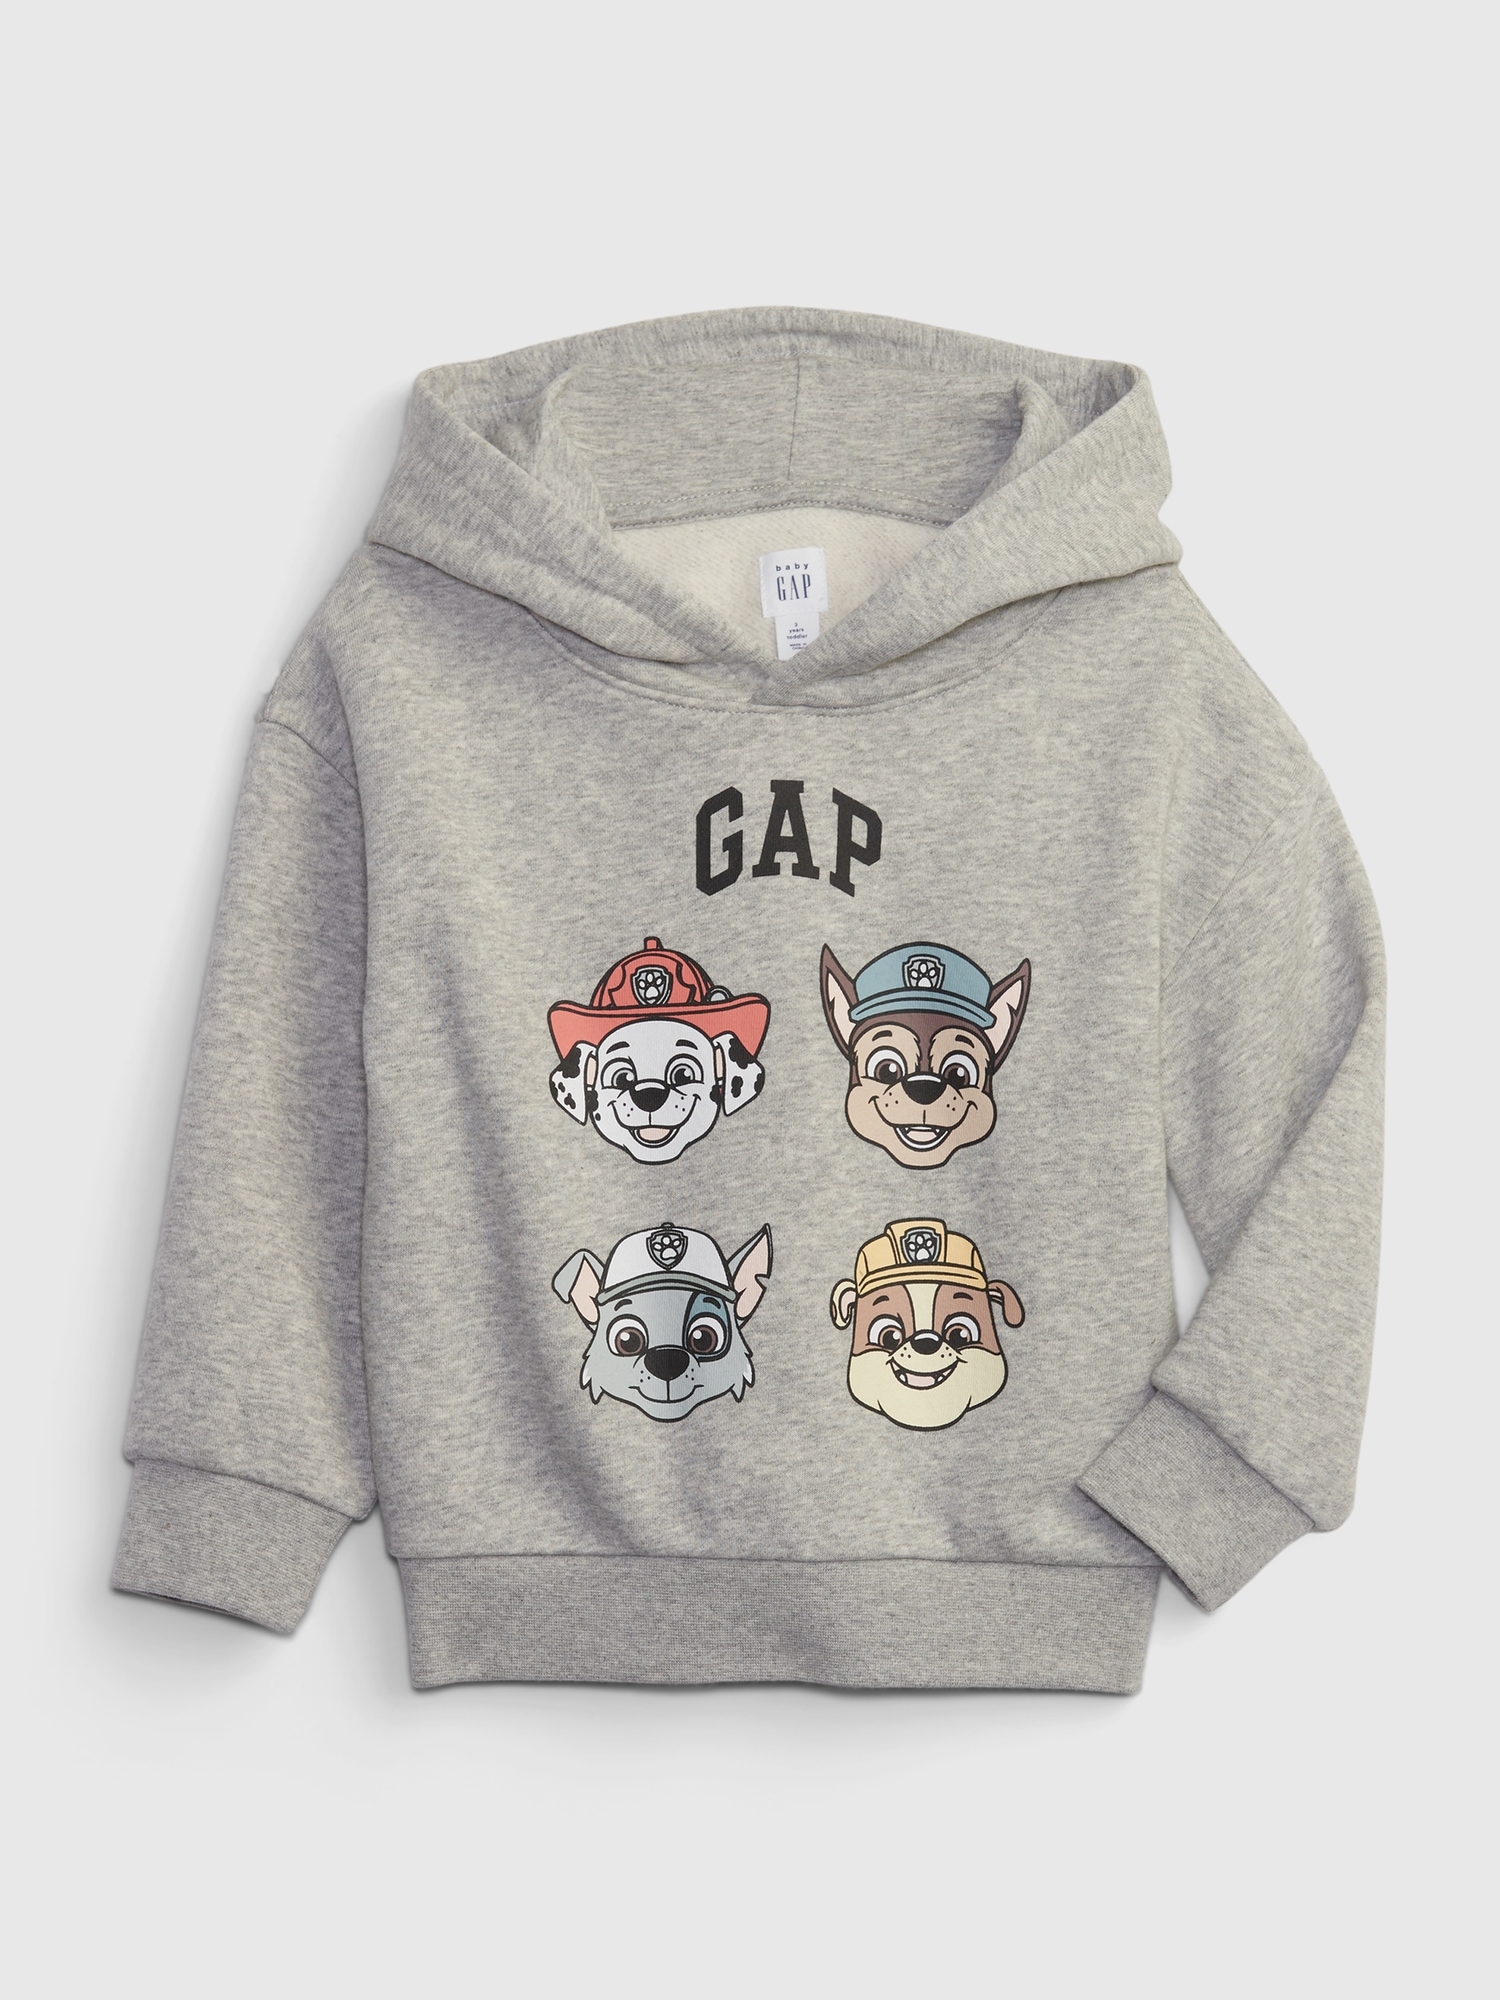 Toddler Paw Patrol Graphic Sweatshirt | Gap